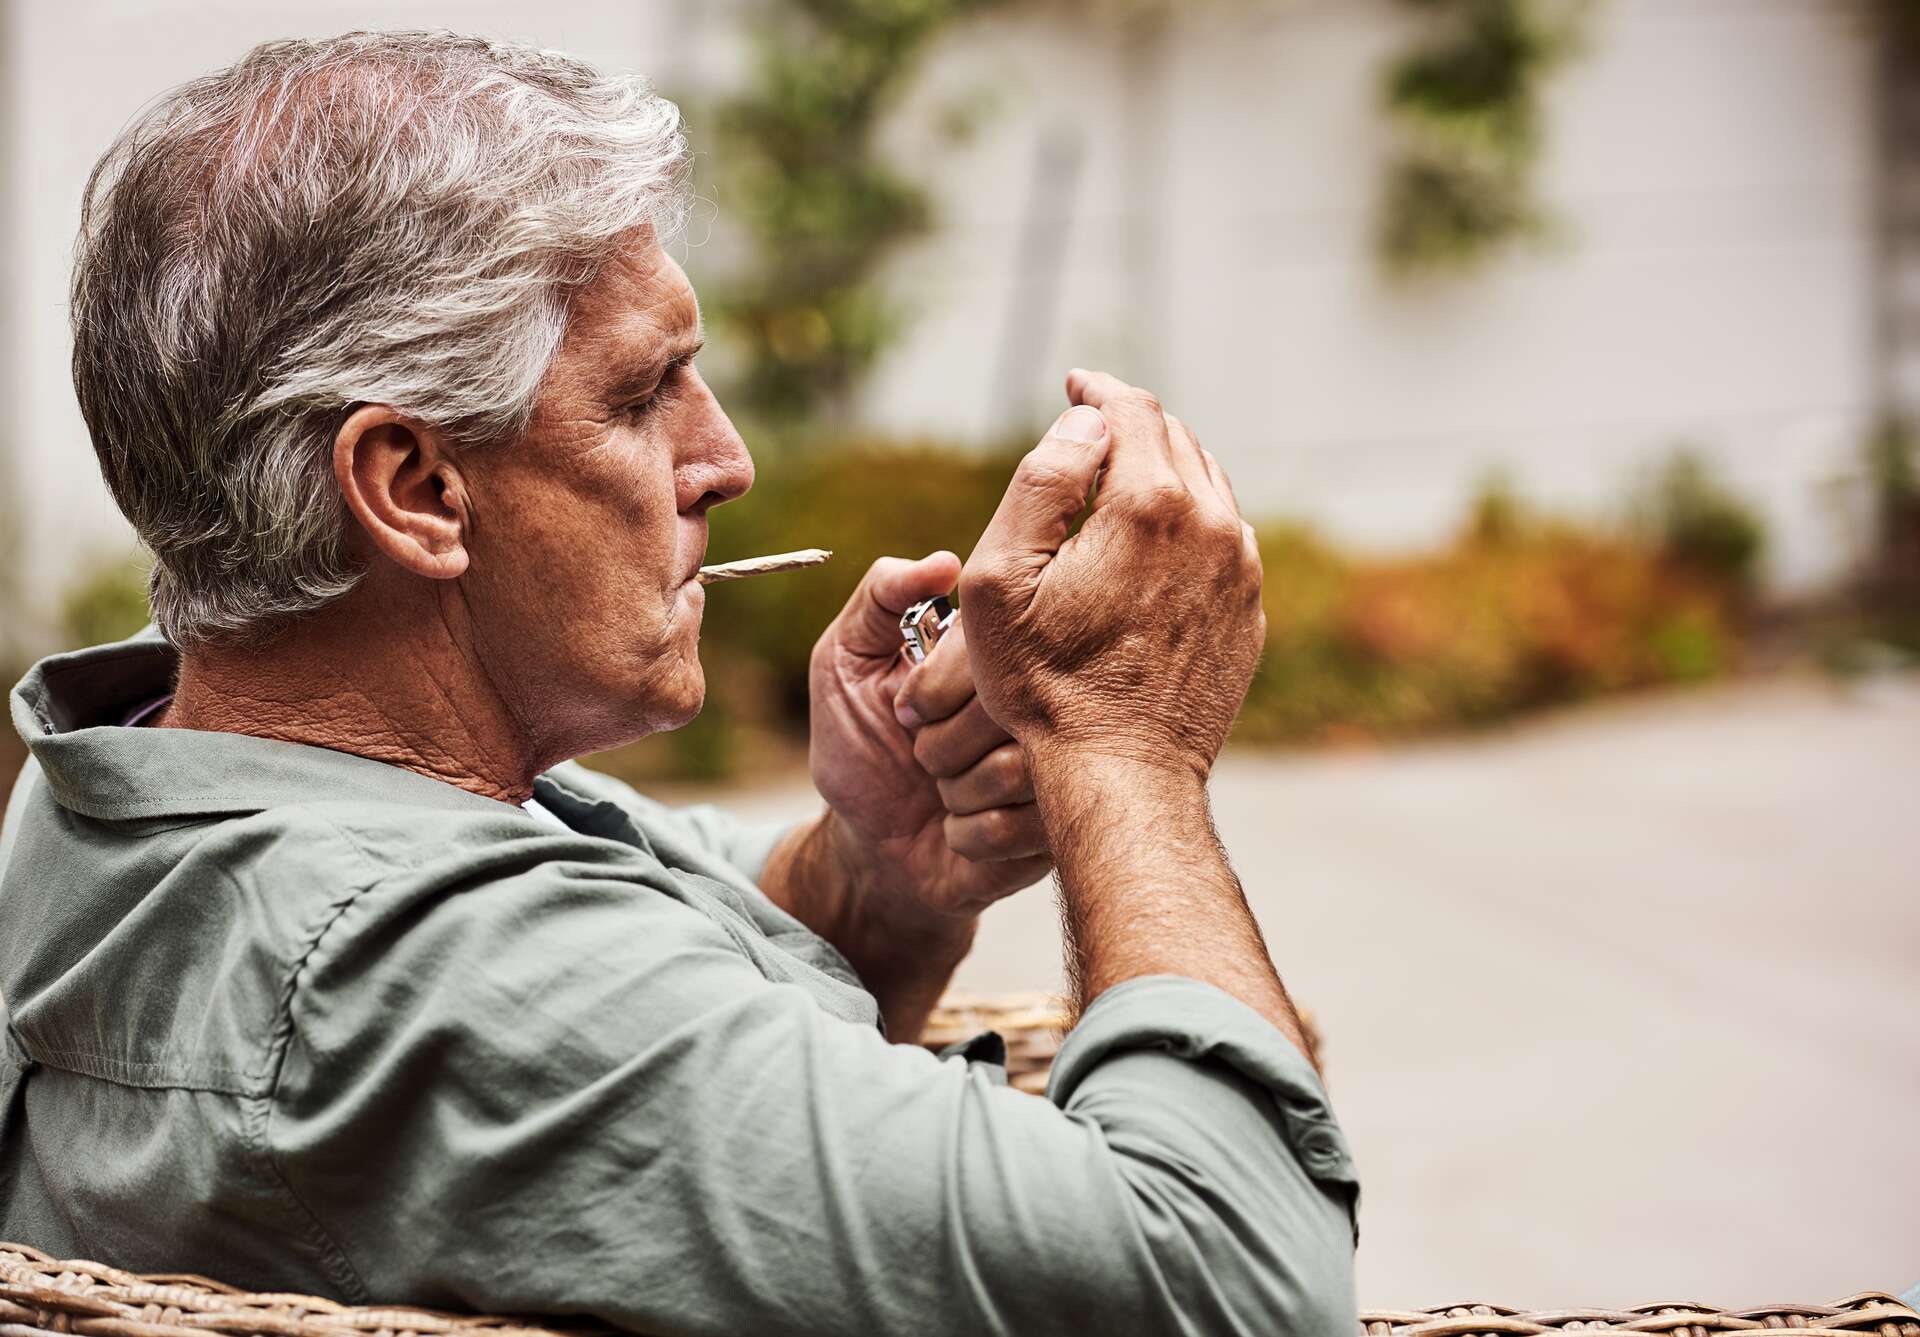 Gli straordinari benefici della cannabis ricreativa per le persone sopra i 45 anni